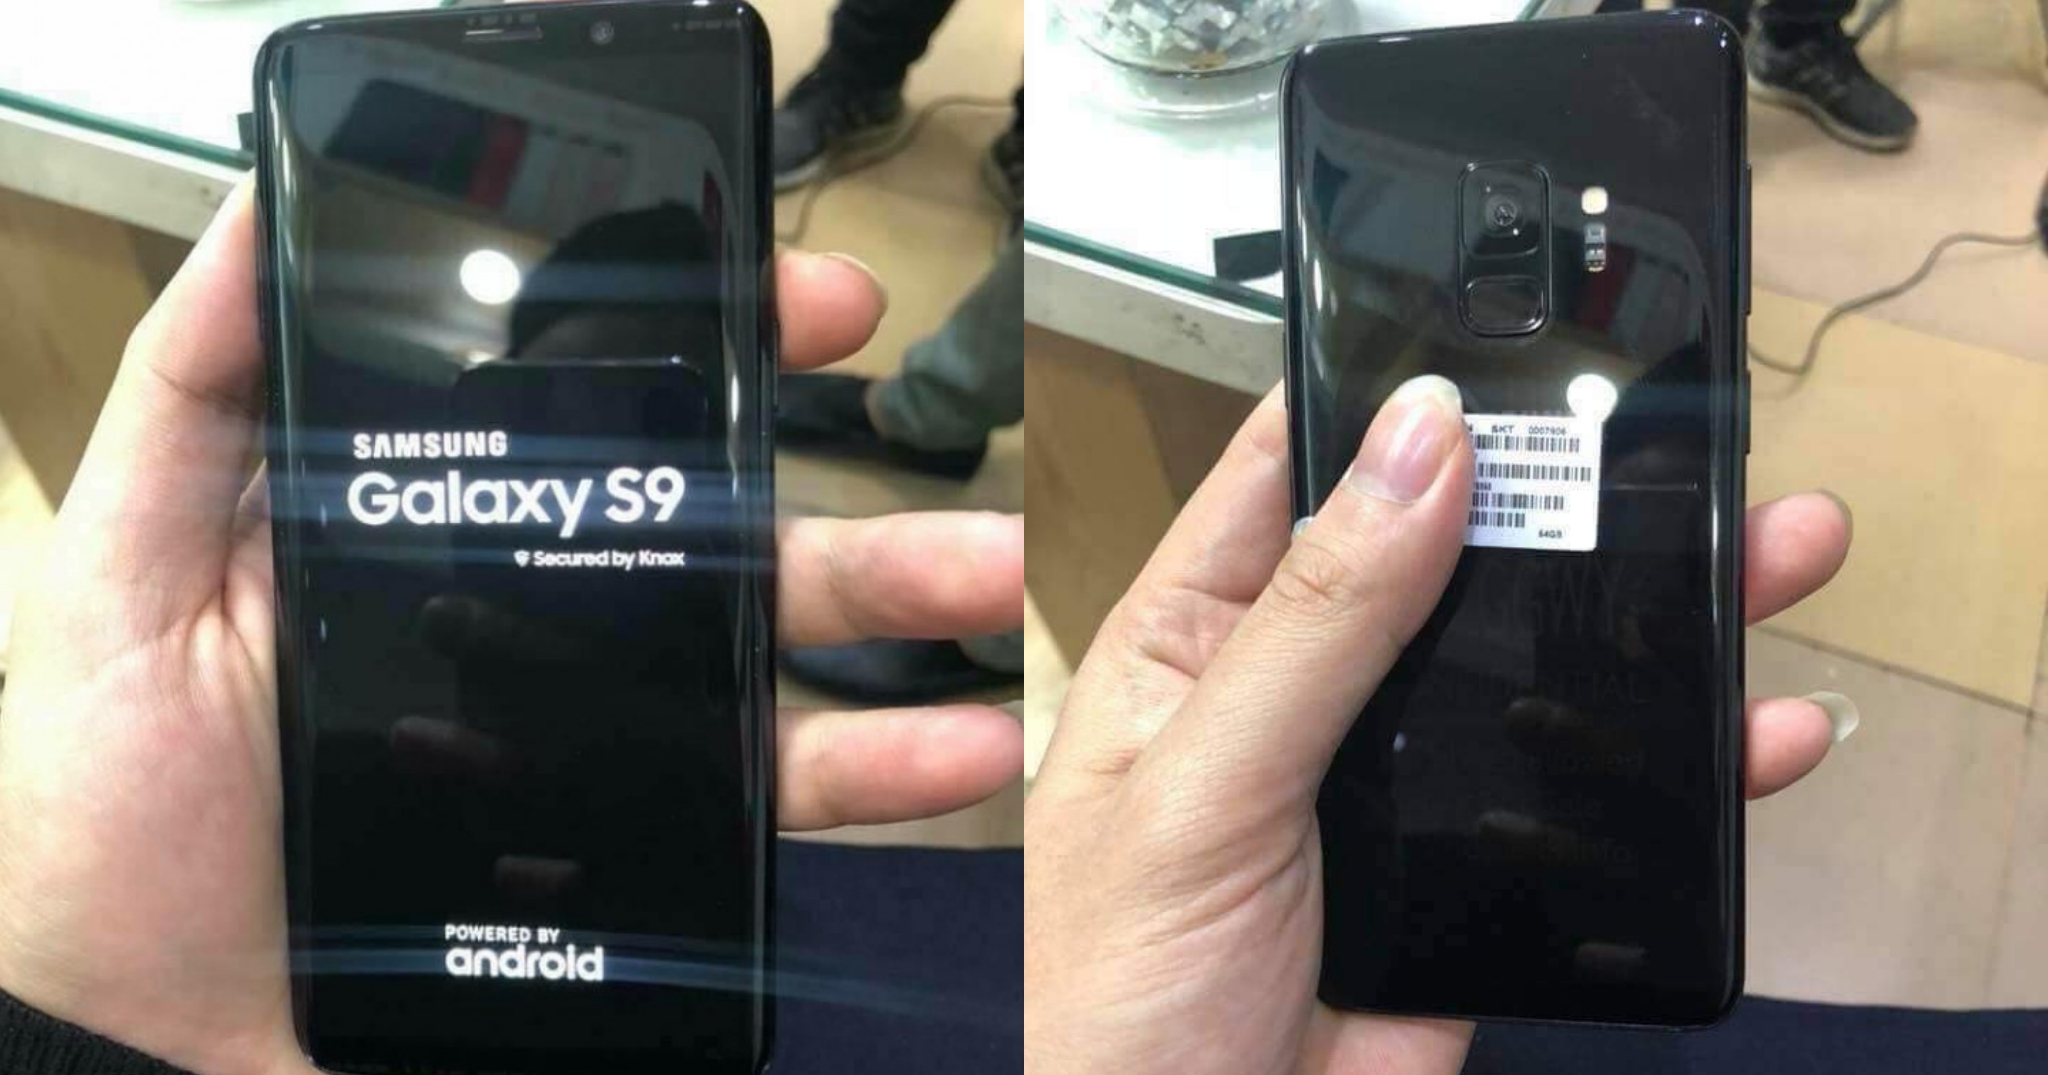 Đây là hình ảnh trên tay Samsung Galaxy S9 bị lộ trước triển lãm